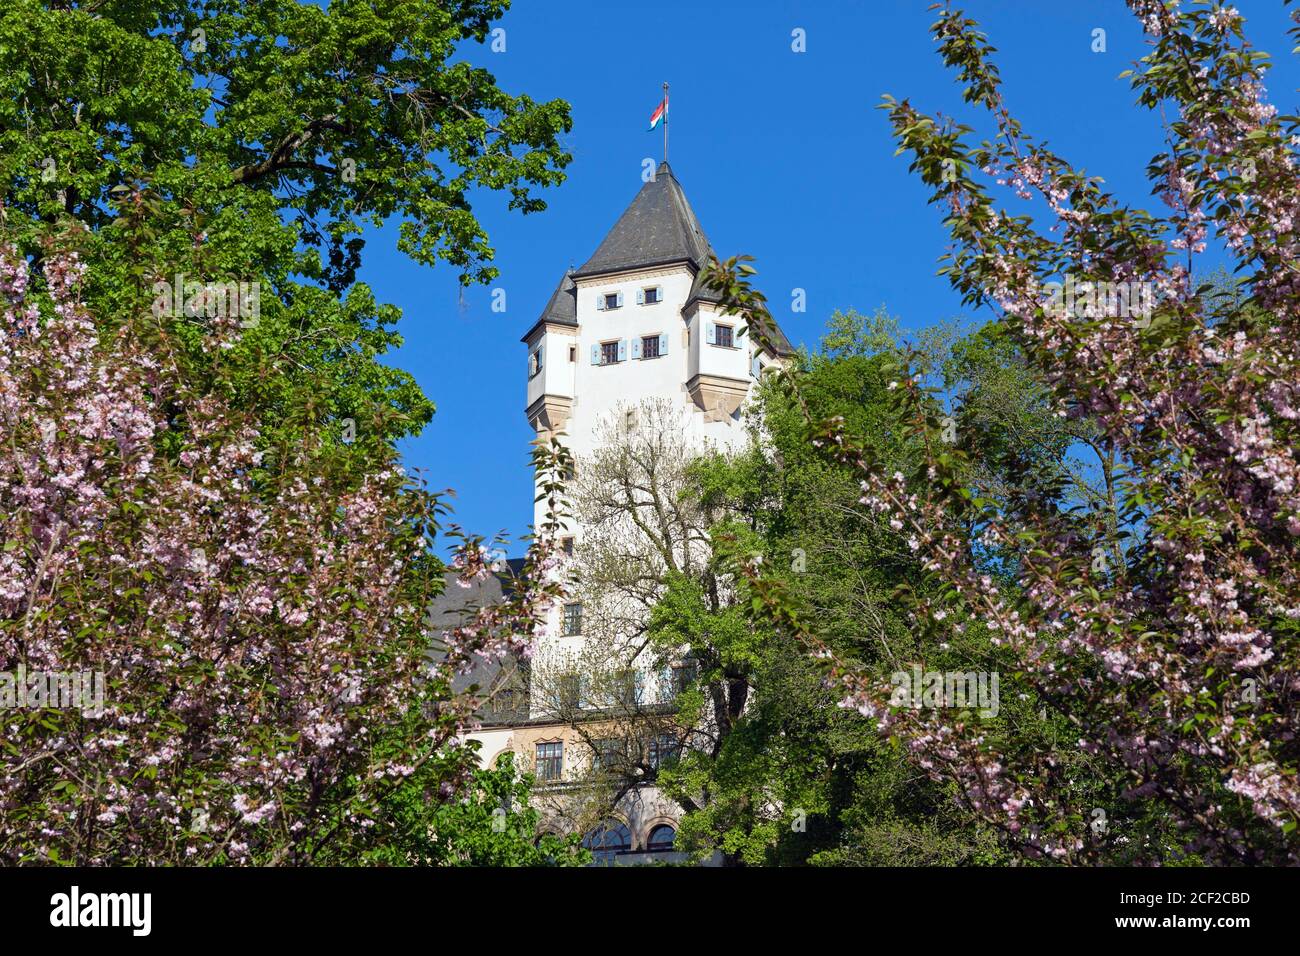 L'Europe, le Luxembourg, Colmar-Berg, le château de Berg (résidence principale du Grand-Duc de Luxembourg) entouré de magnifiques jardins. Banque D'Images